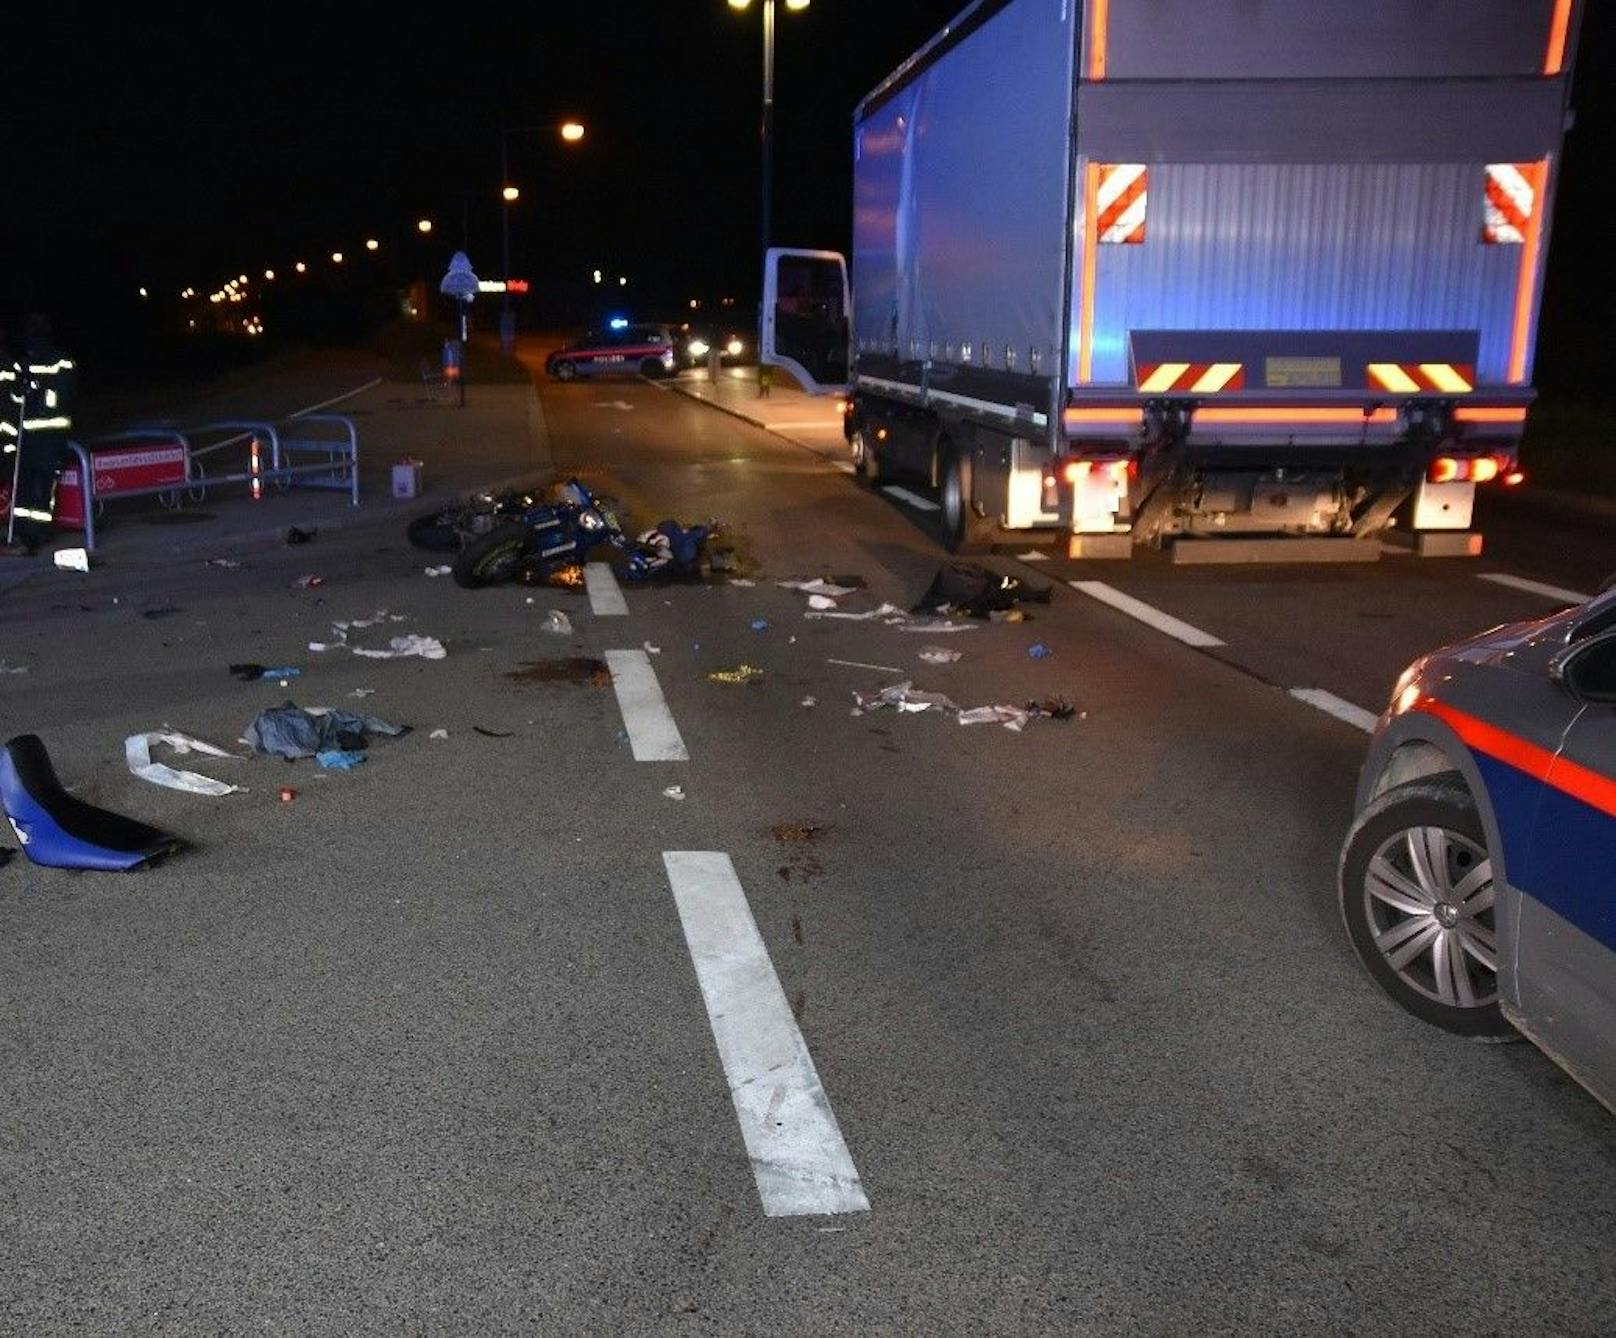 Für den jungen Motorradfahrer kam nach dem Lkw-Crash in Wien jede Hilfe zu spät.